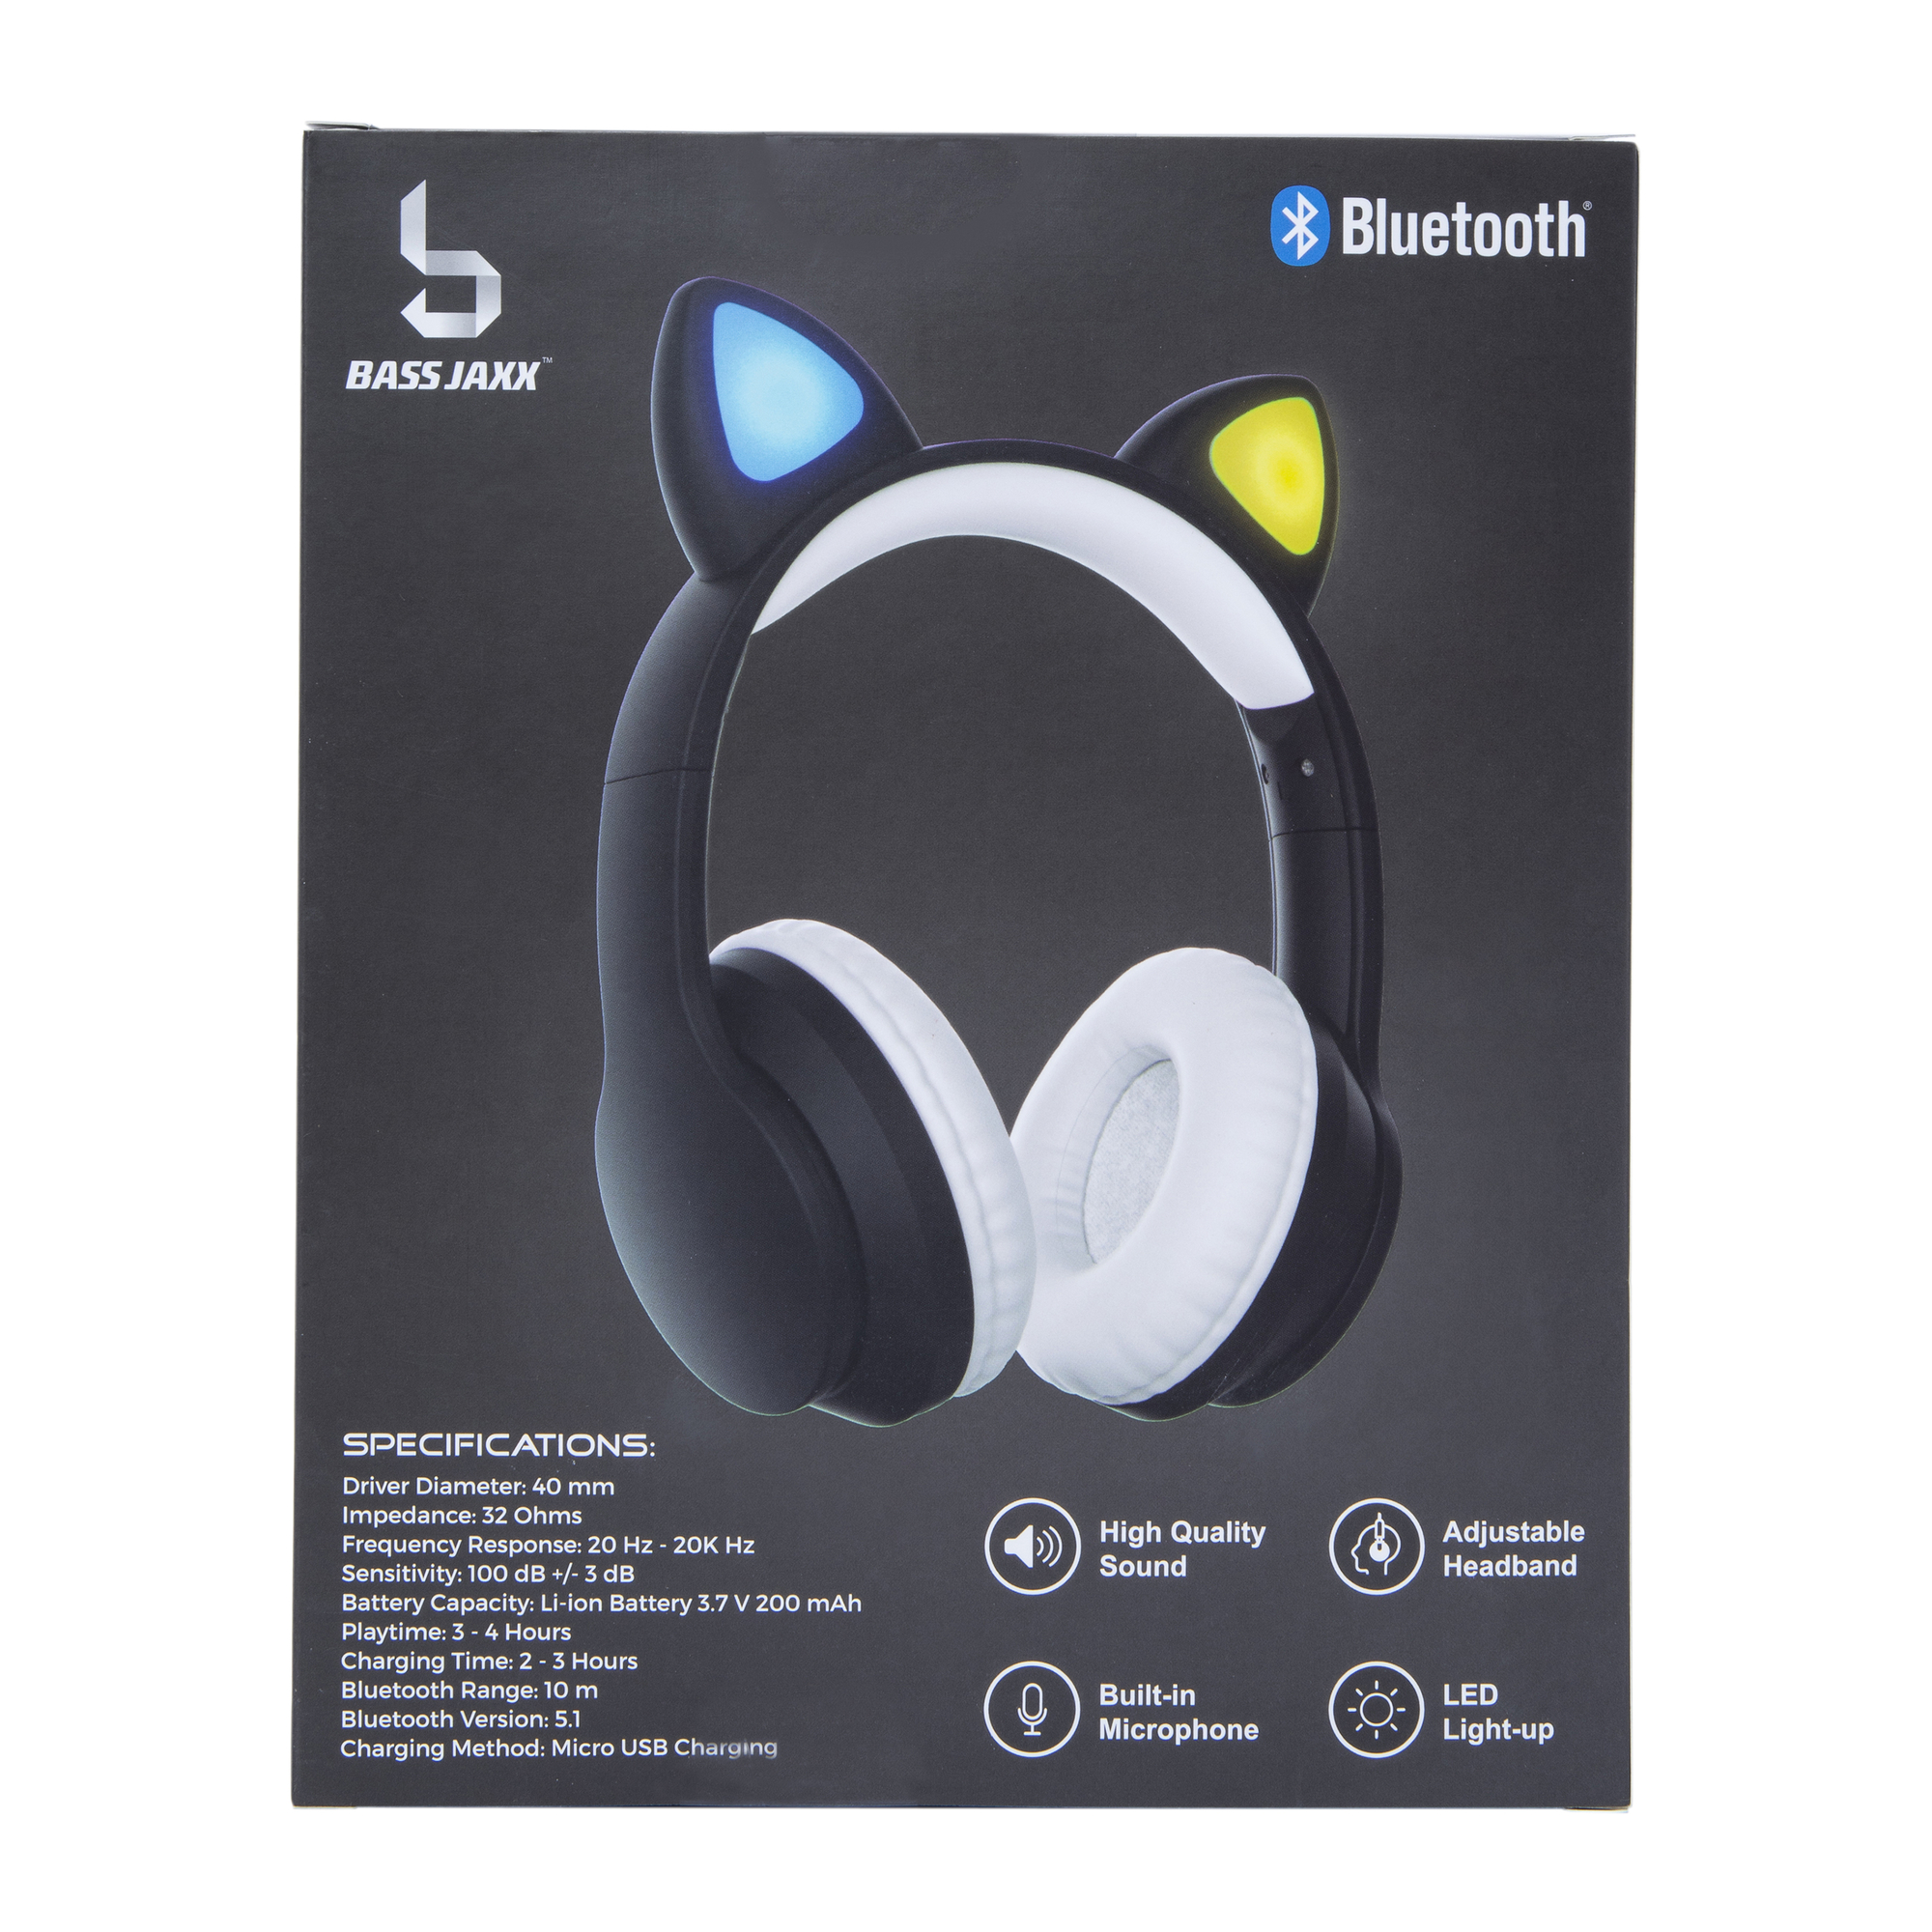 color-change bluetooth LED cat ear headphones w/ mic